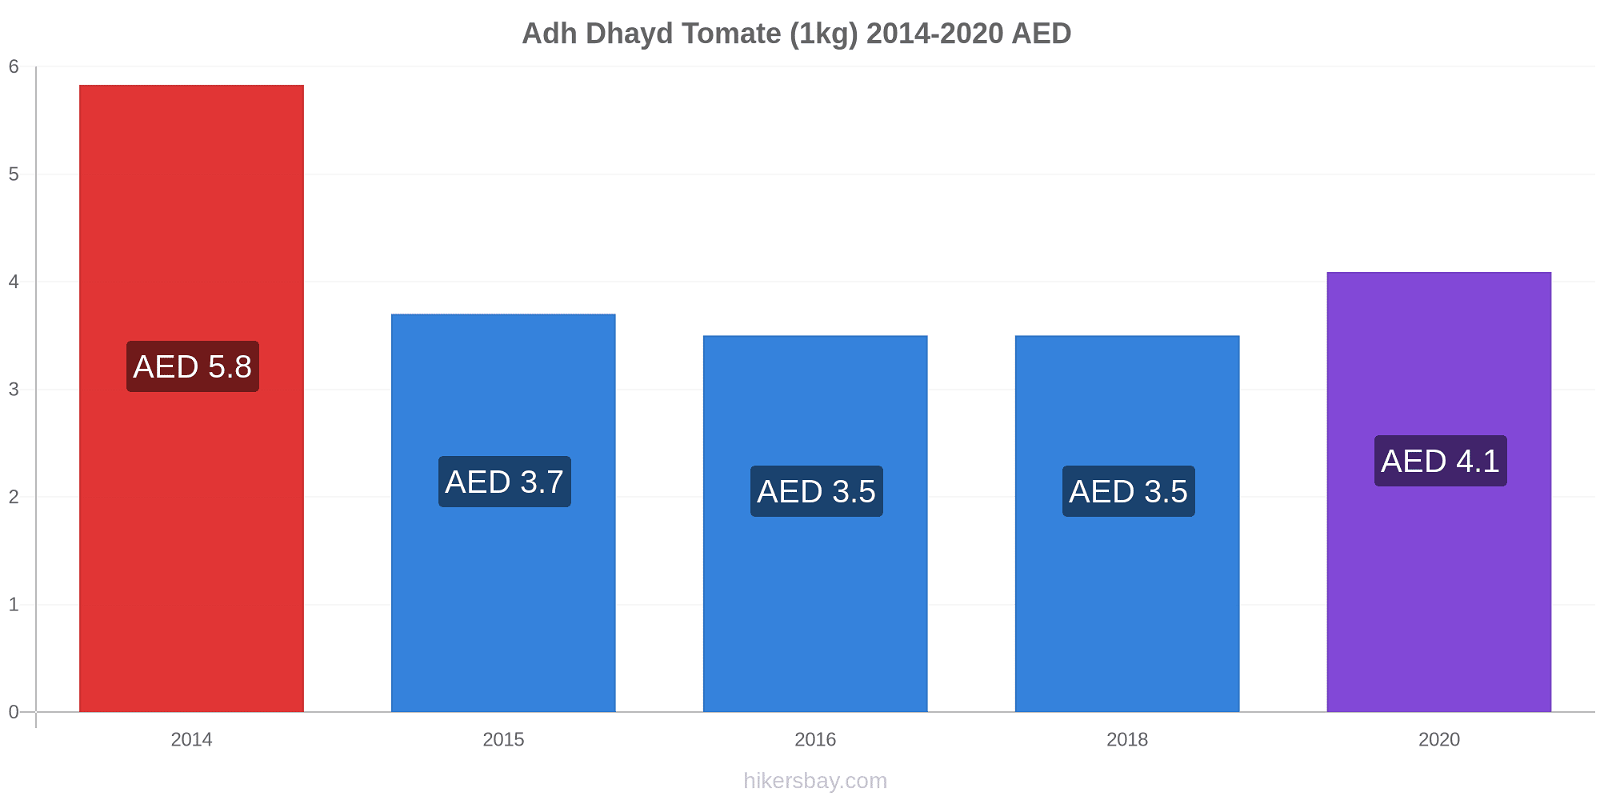 Adh Dhayd cambios de precios Tomate (1kg) hikersbay.com